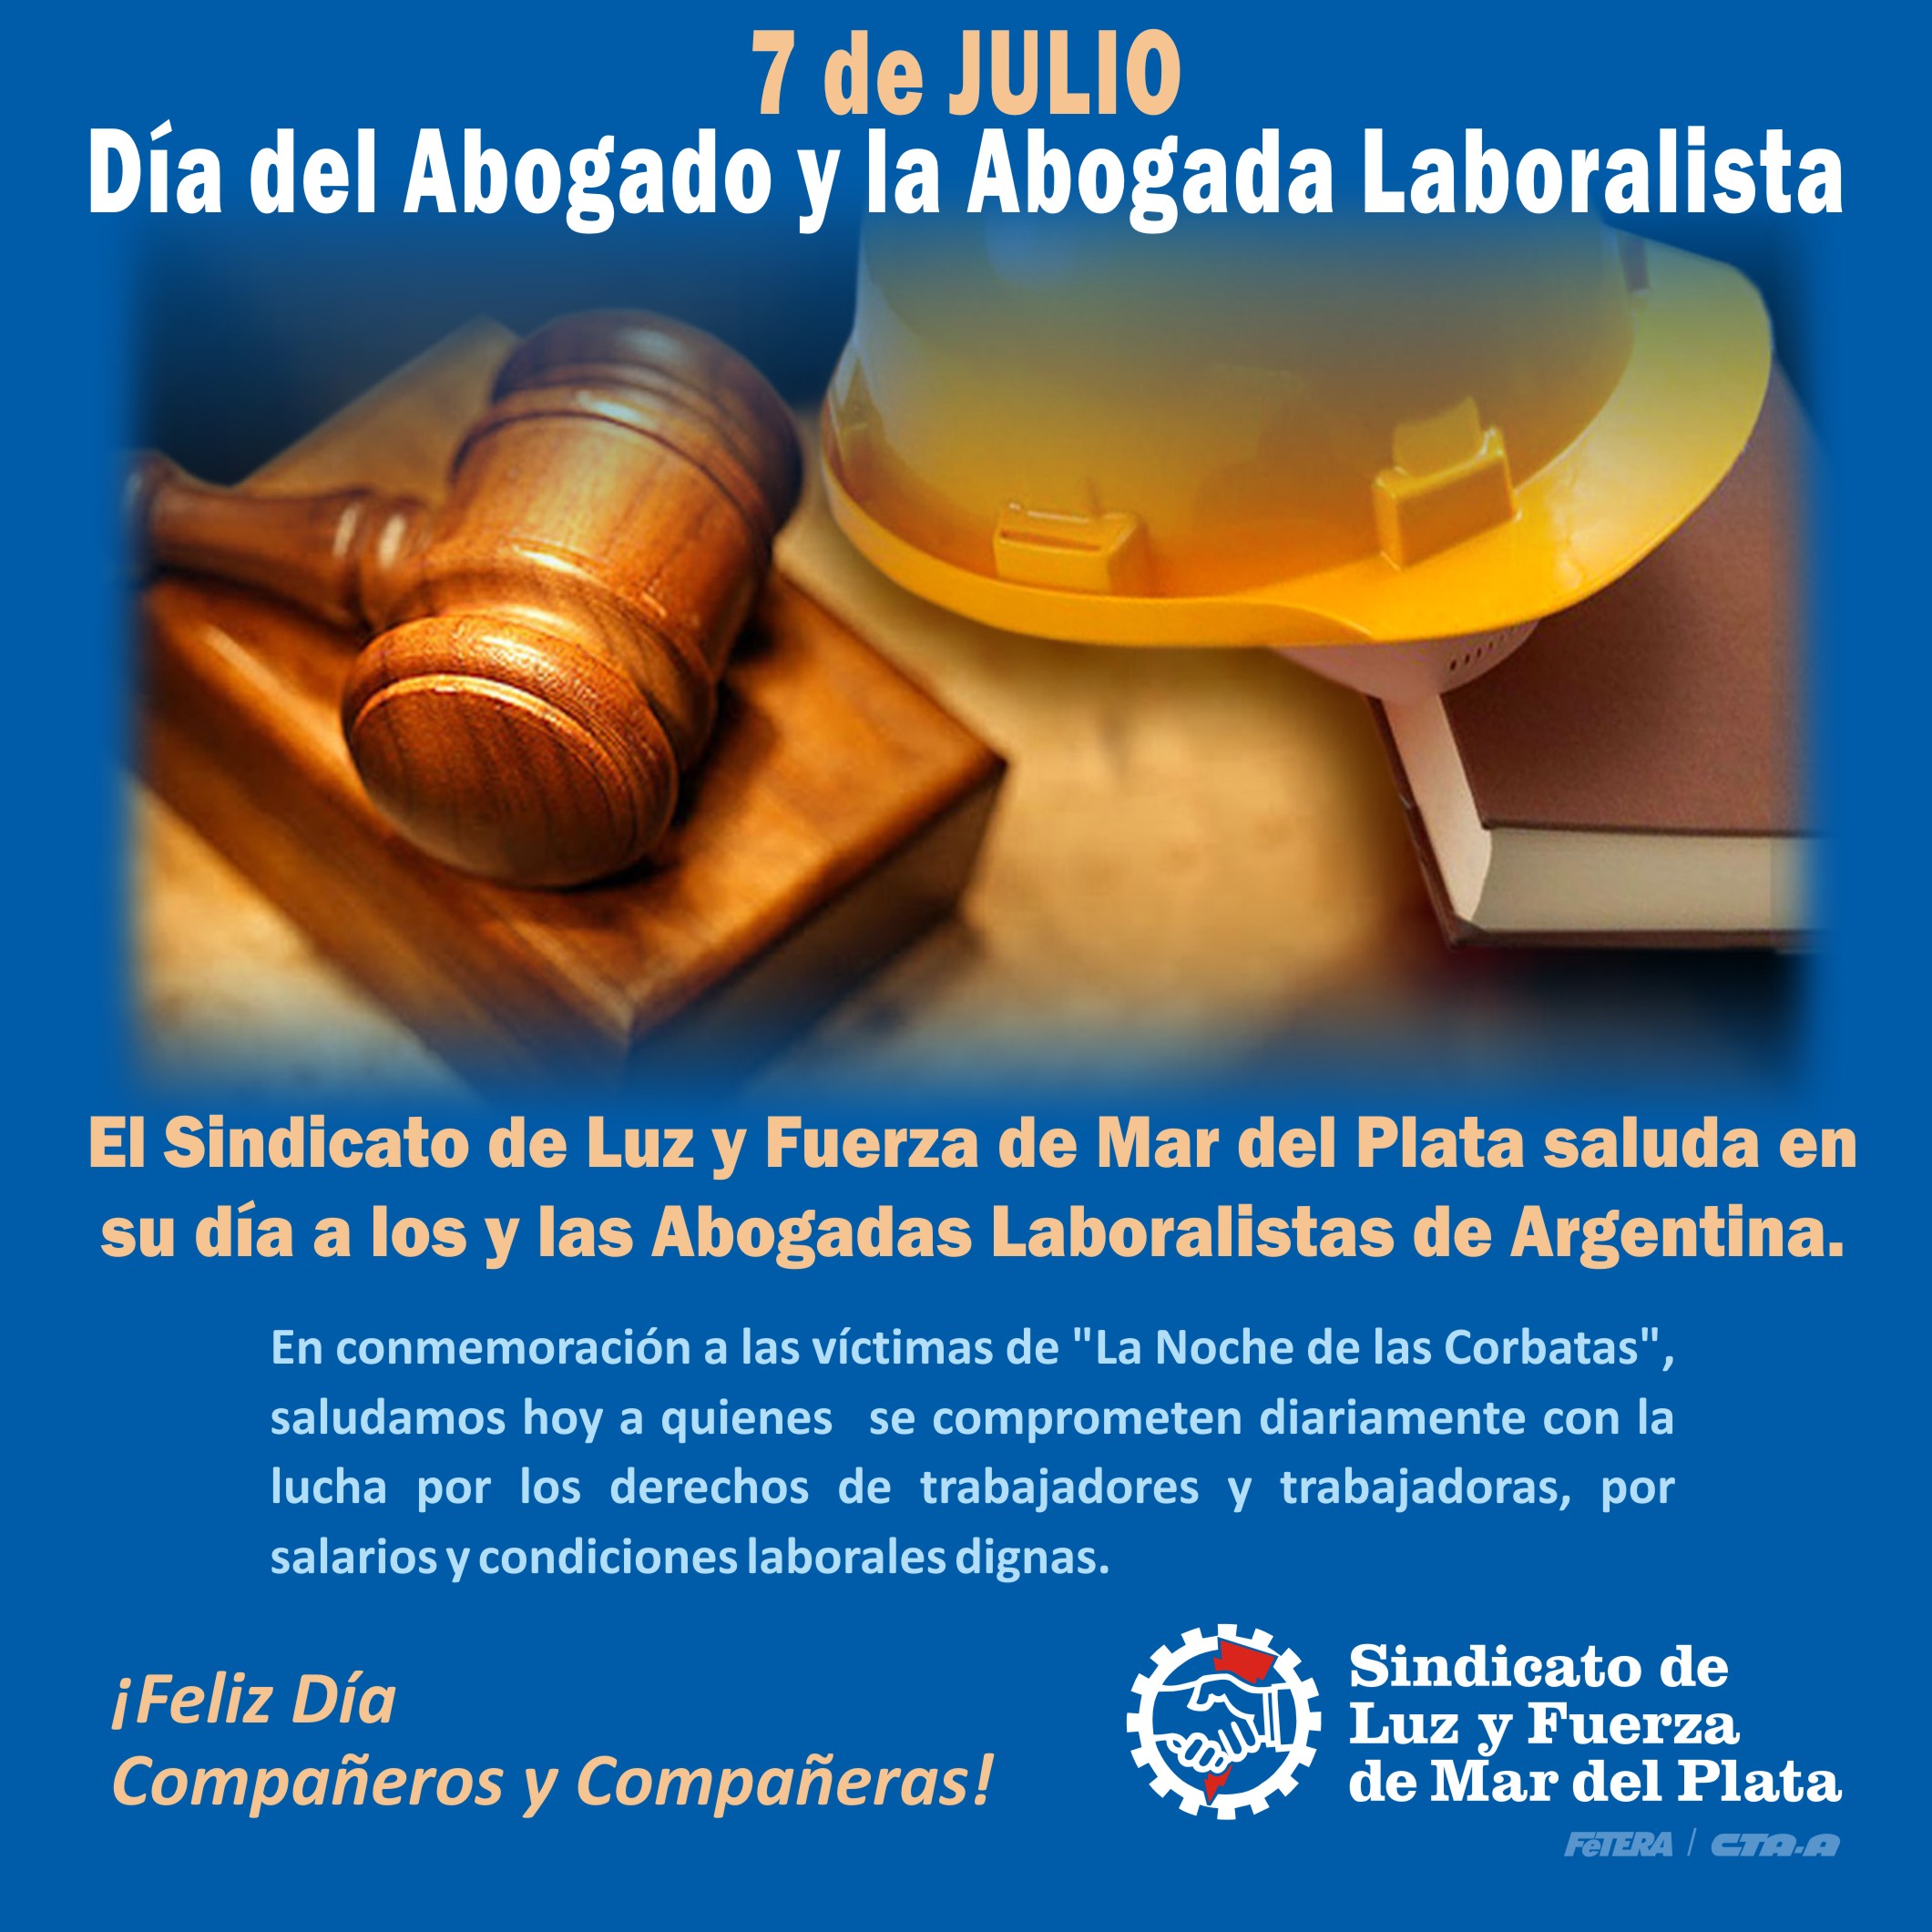 7 de julio: Día del Abogado y la Abogada Laboralista